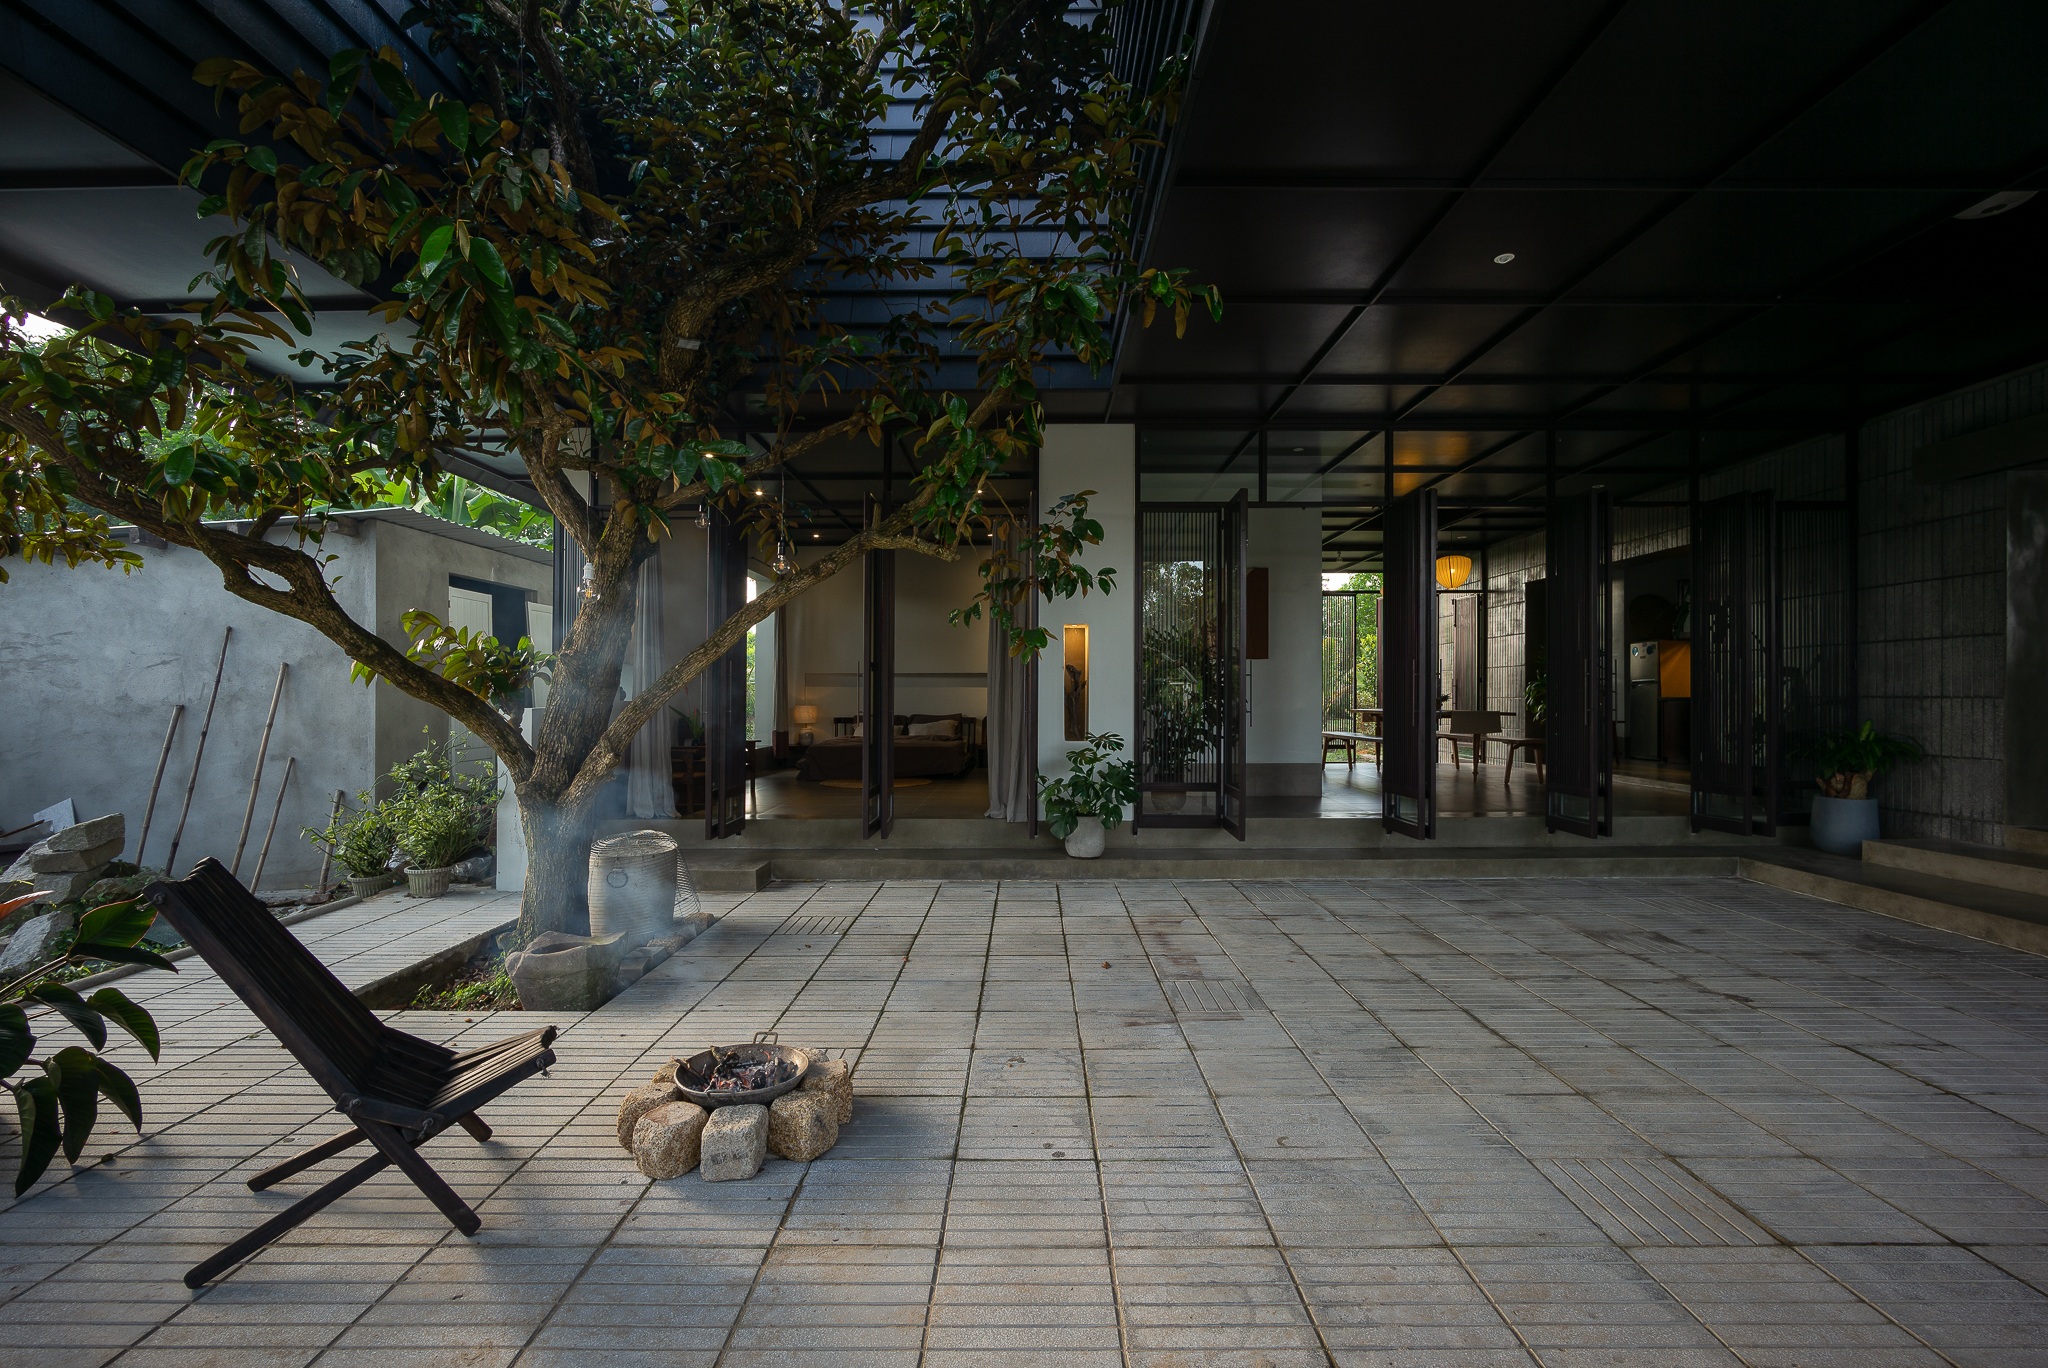 View - Căn biệt thự nhà vườn tiện nghi nằm giữa rừng keo xanh mướt tại Quảng Nam | Báo Dân trí